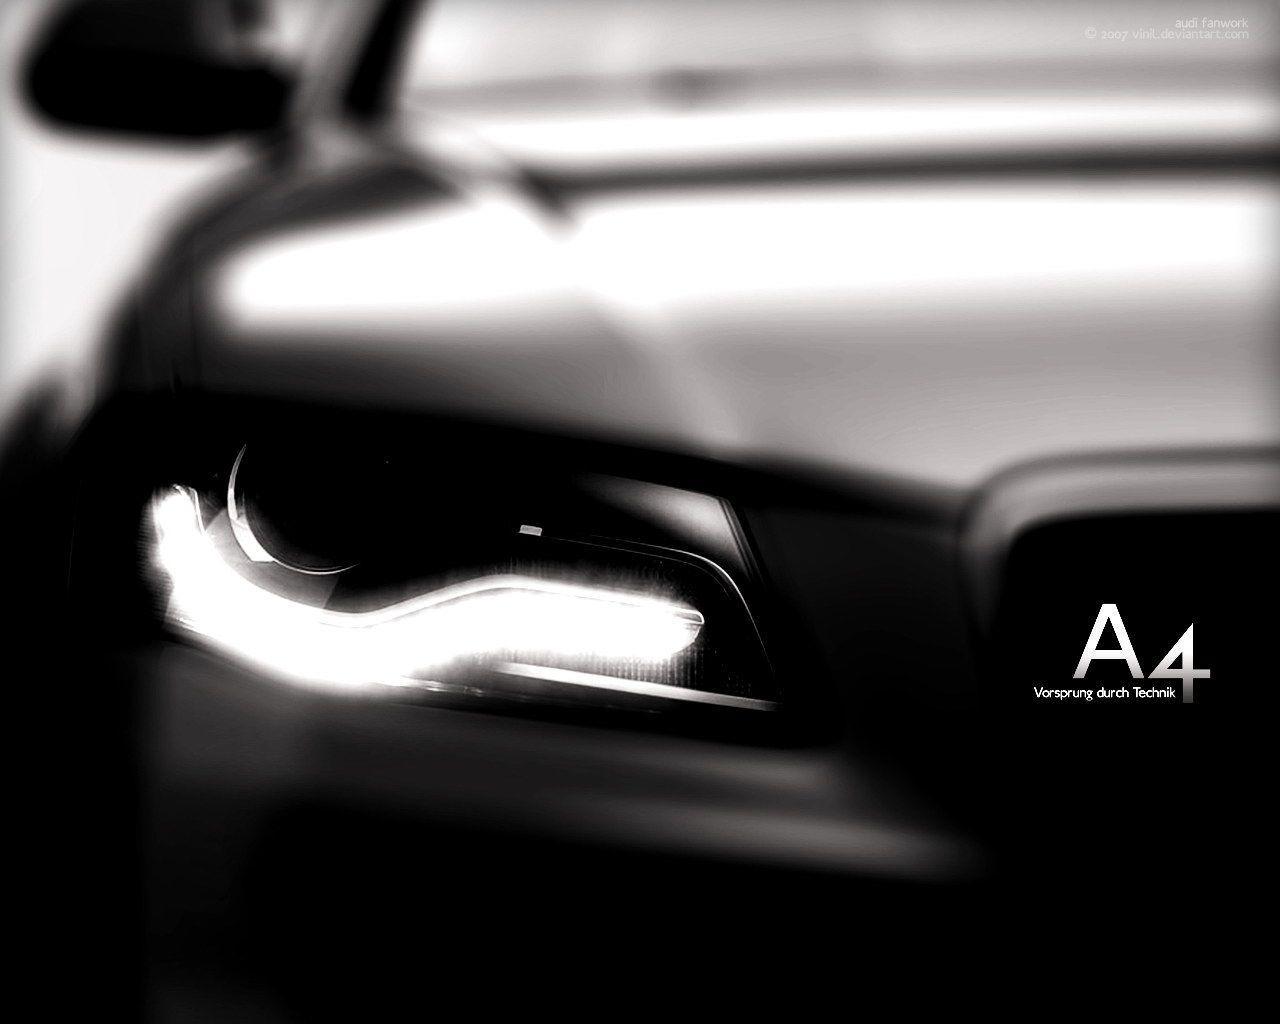 Audi A4 Wallpapers - Wallpaper Cave